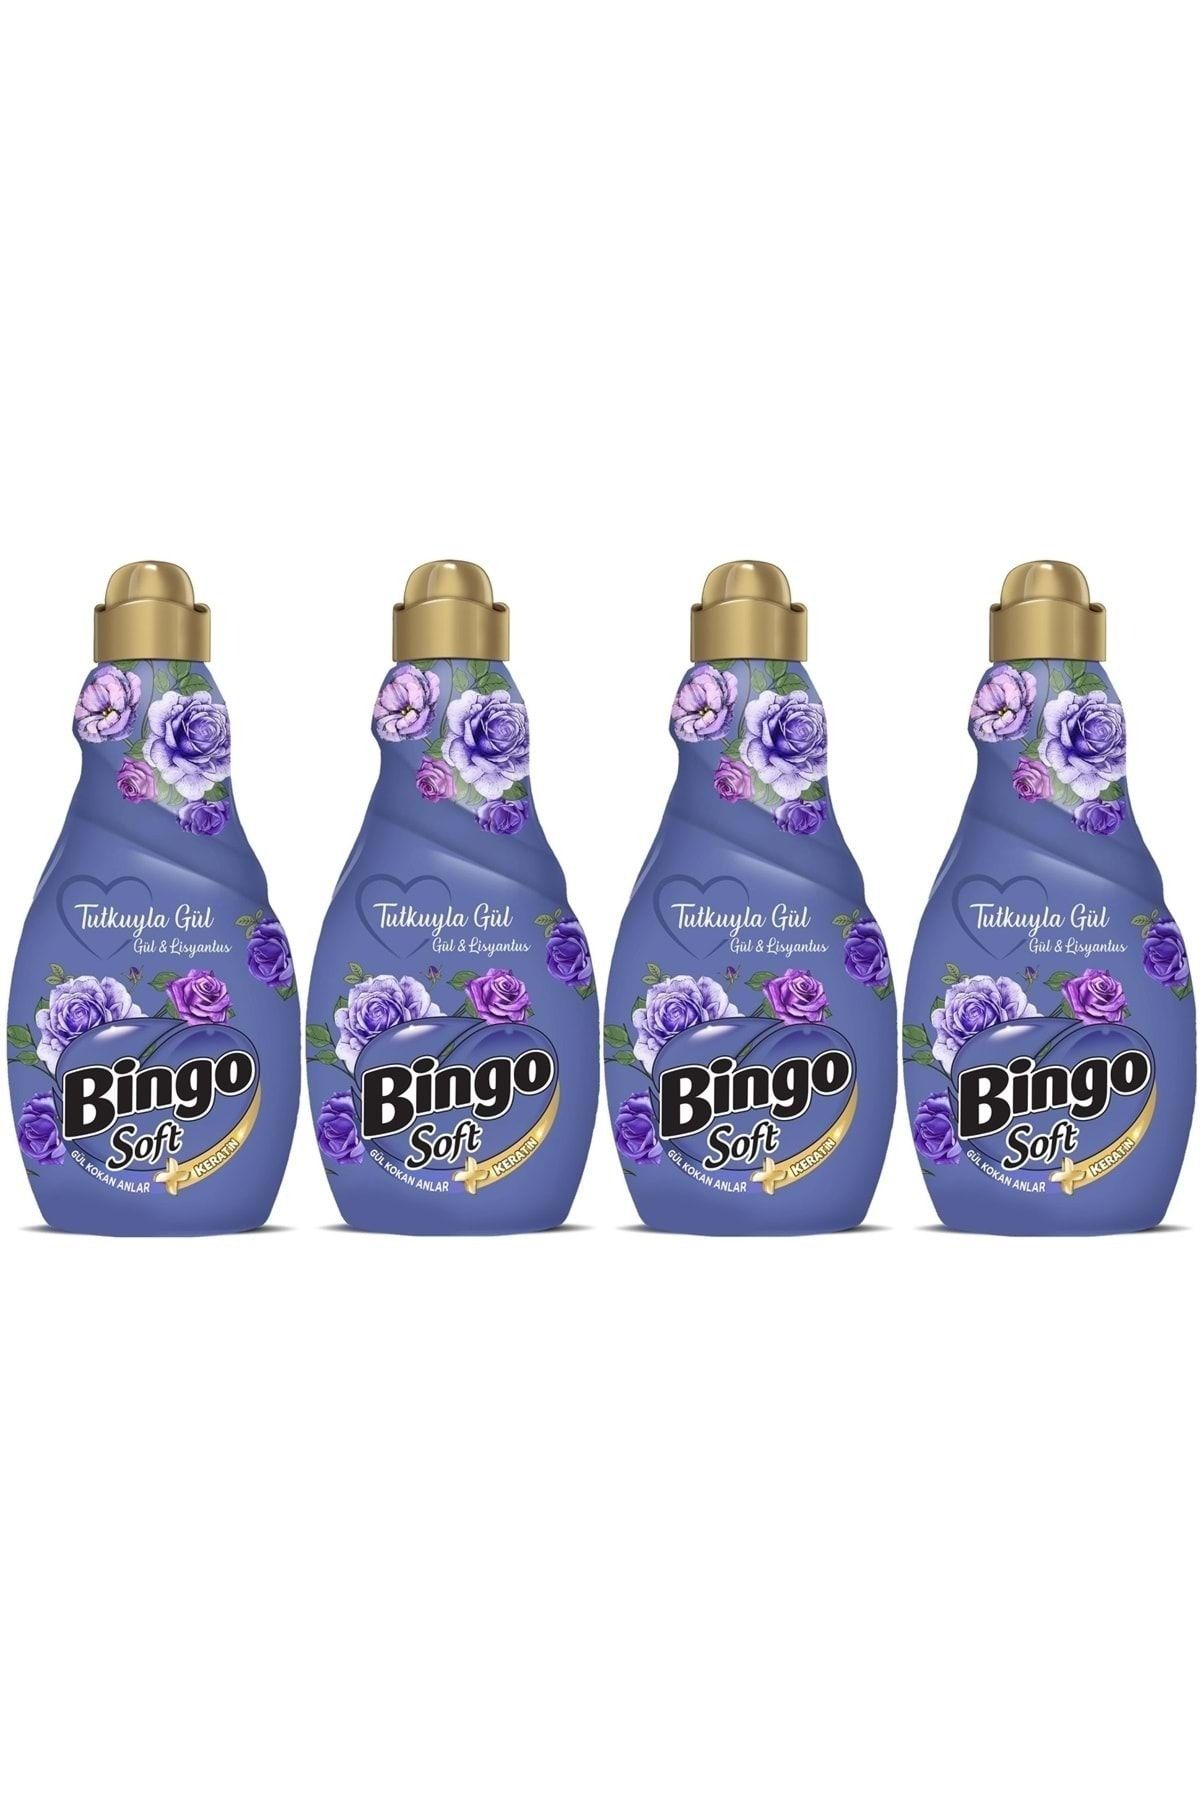 Bingo Soft Çamaşır Yumuşatıcı Konsantre 1440ml Tutkuyla Gül (gül & Lisyantus) (4 Lü Set)